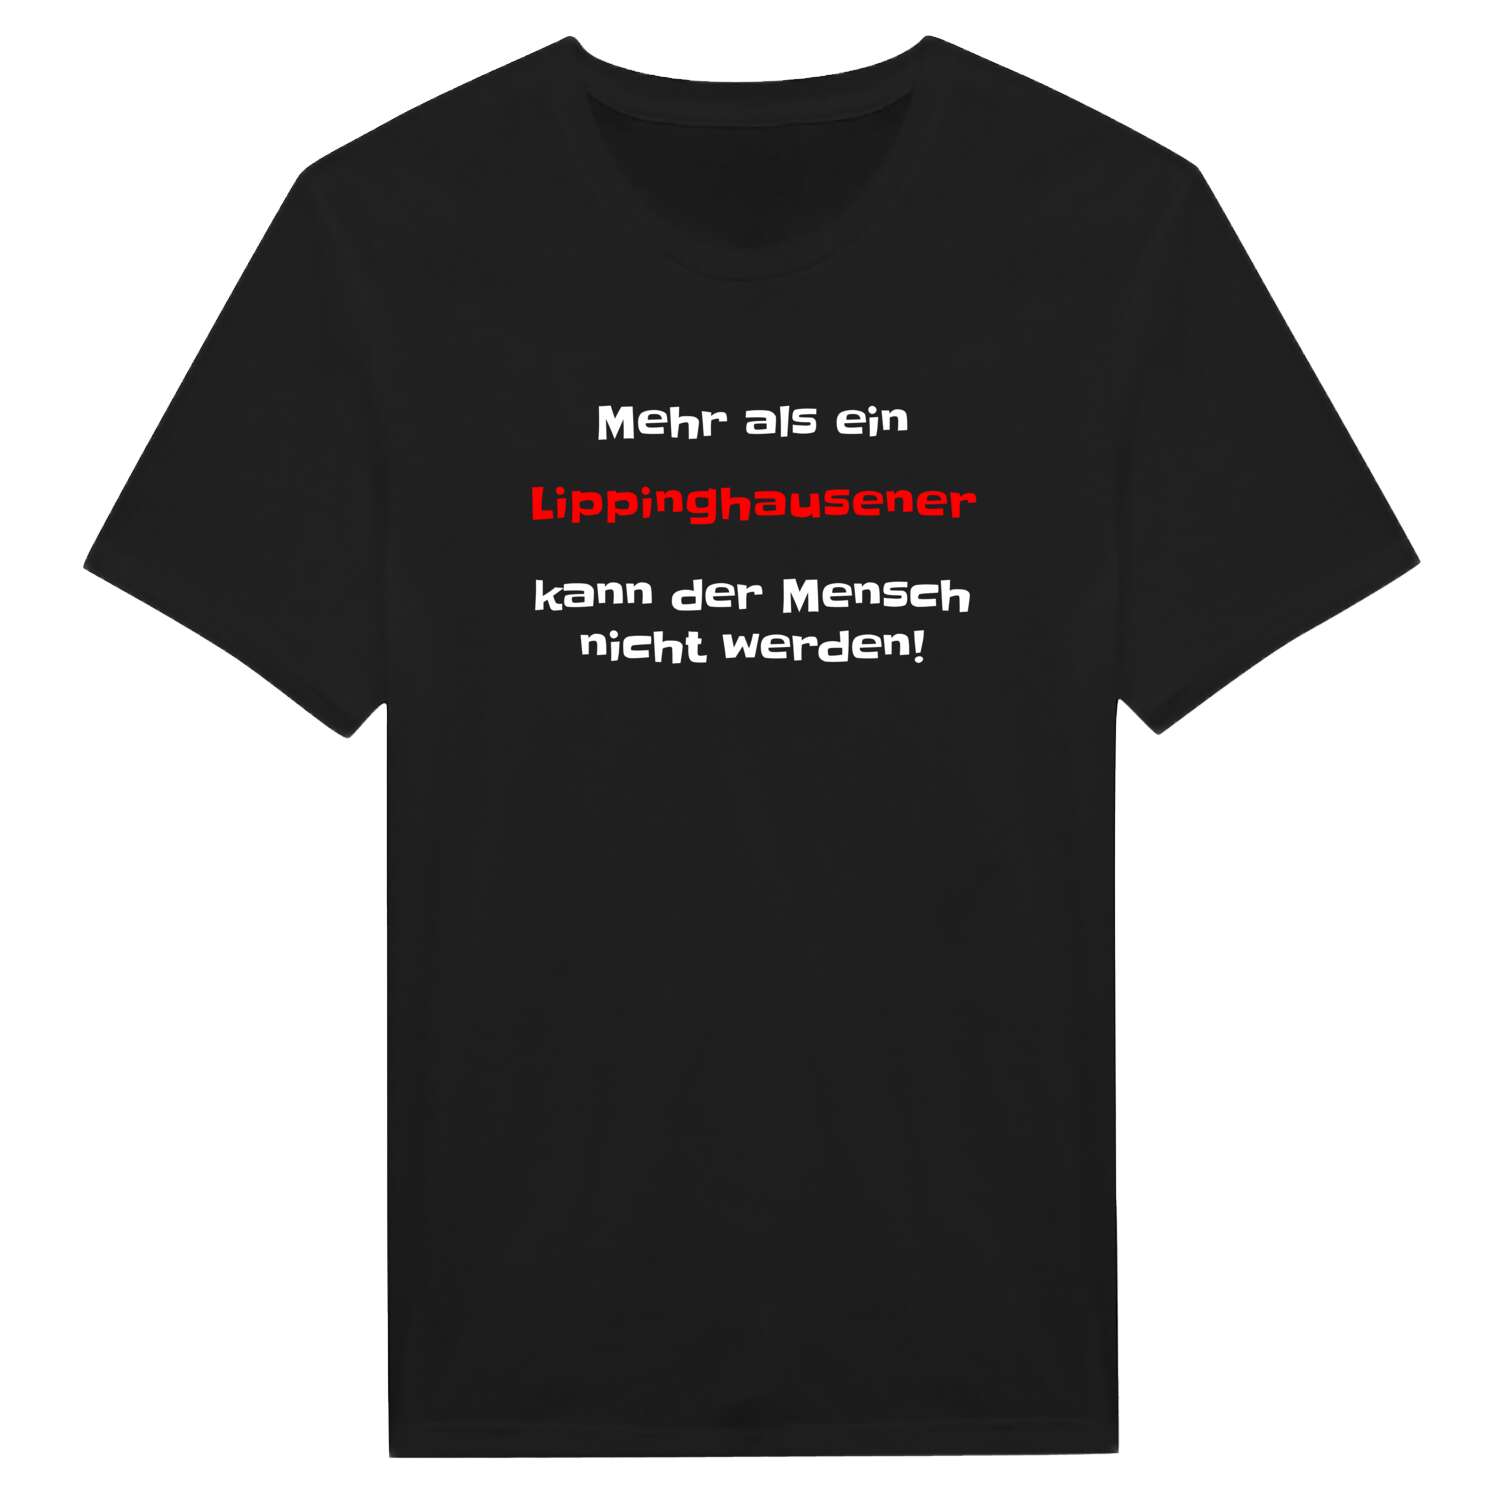 Lippinghausen T-Shirt »Mehr als ein«